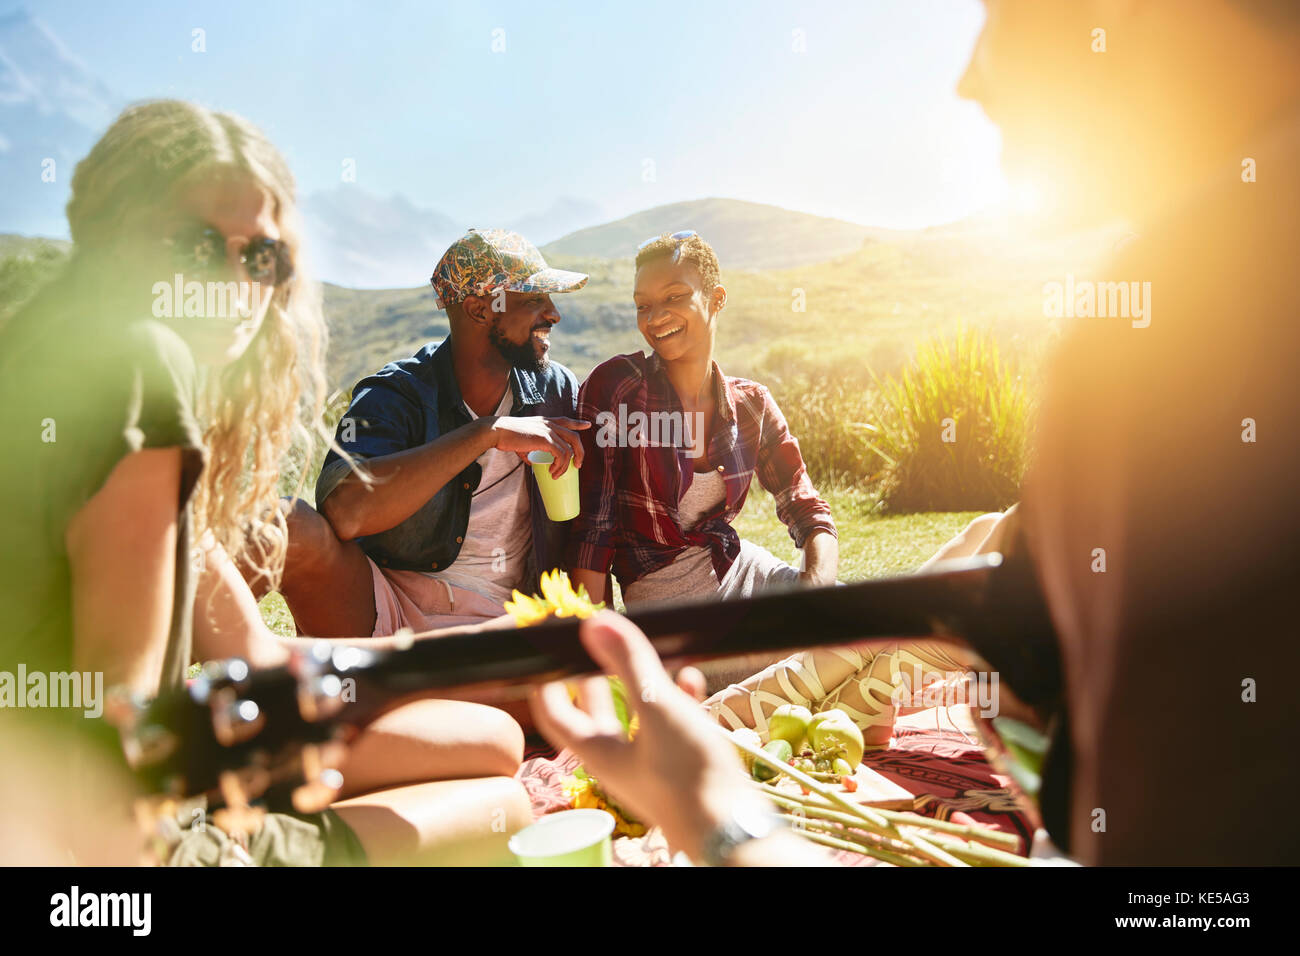 Jeunes amis qui pique-niquent dans un parc d'été ensoleillé Banque D'Images